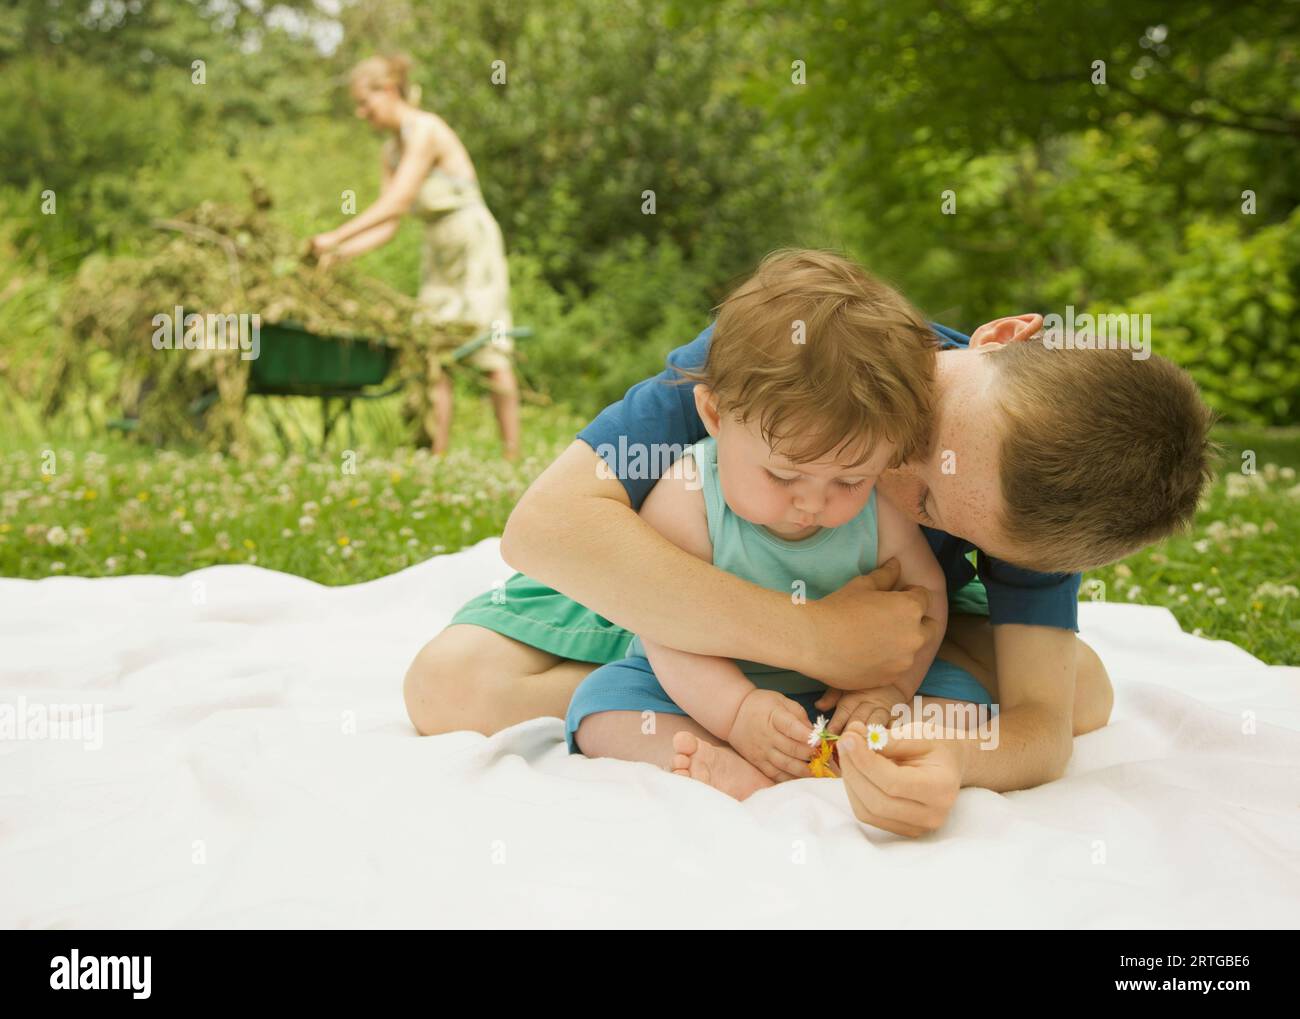 Kleiner Junge sitzt in einem Garten umarmen ein küssen seinen kleinen Bruder Stockfoto